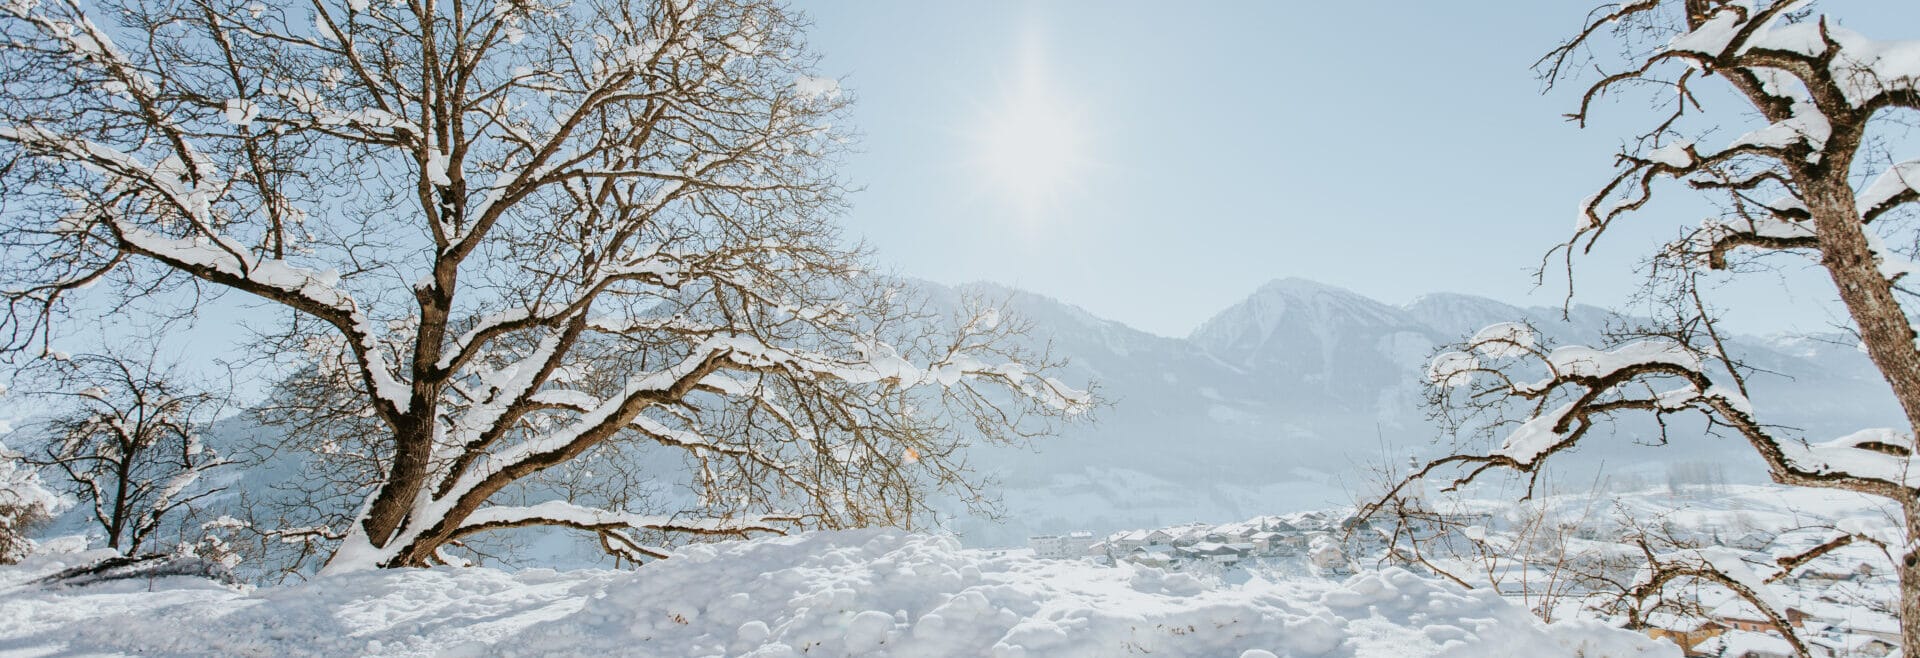 Salzburger Sonnenterrasse, Winter, Schnee